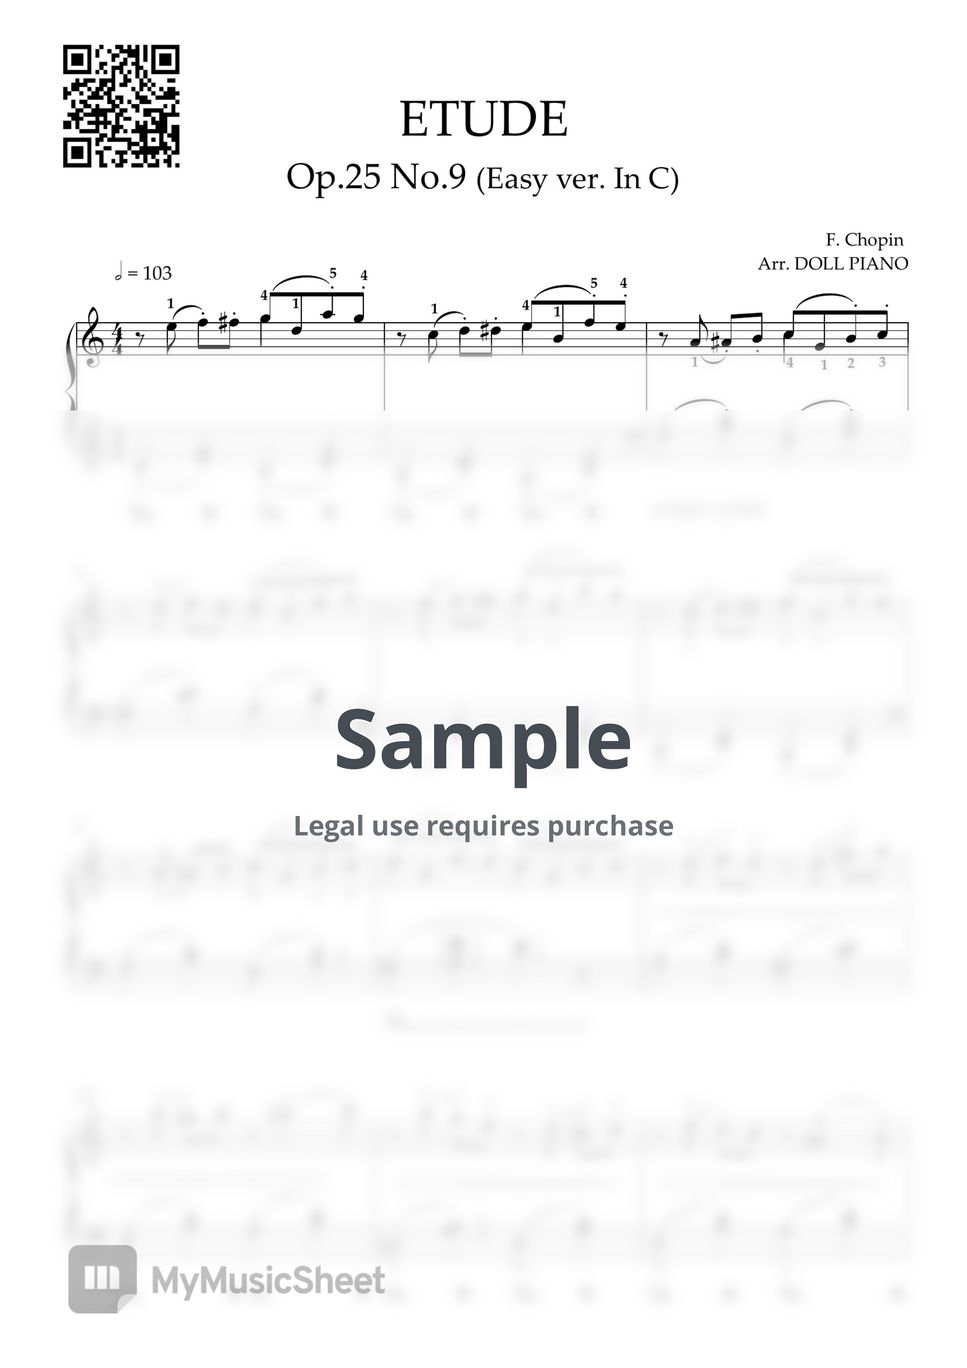 chopin - 쇼팽 에튀트 Op.25 No.9 (나비) (쉬운버전, 다장조, 큰 손 버전) by DOLL PIANO